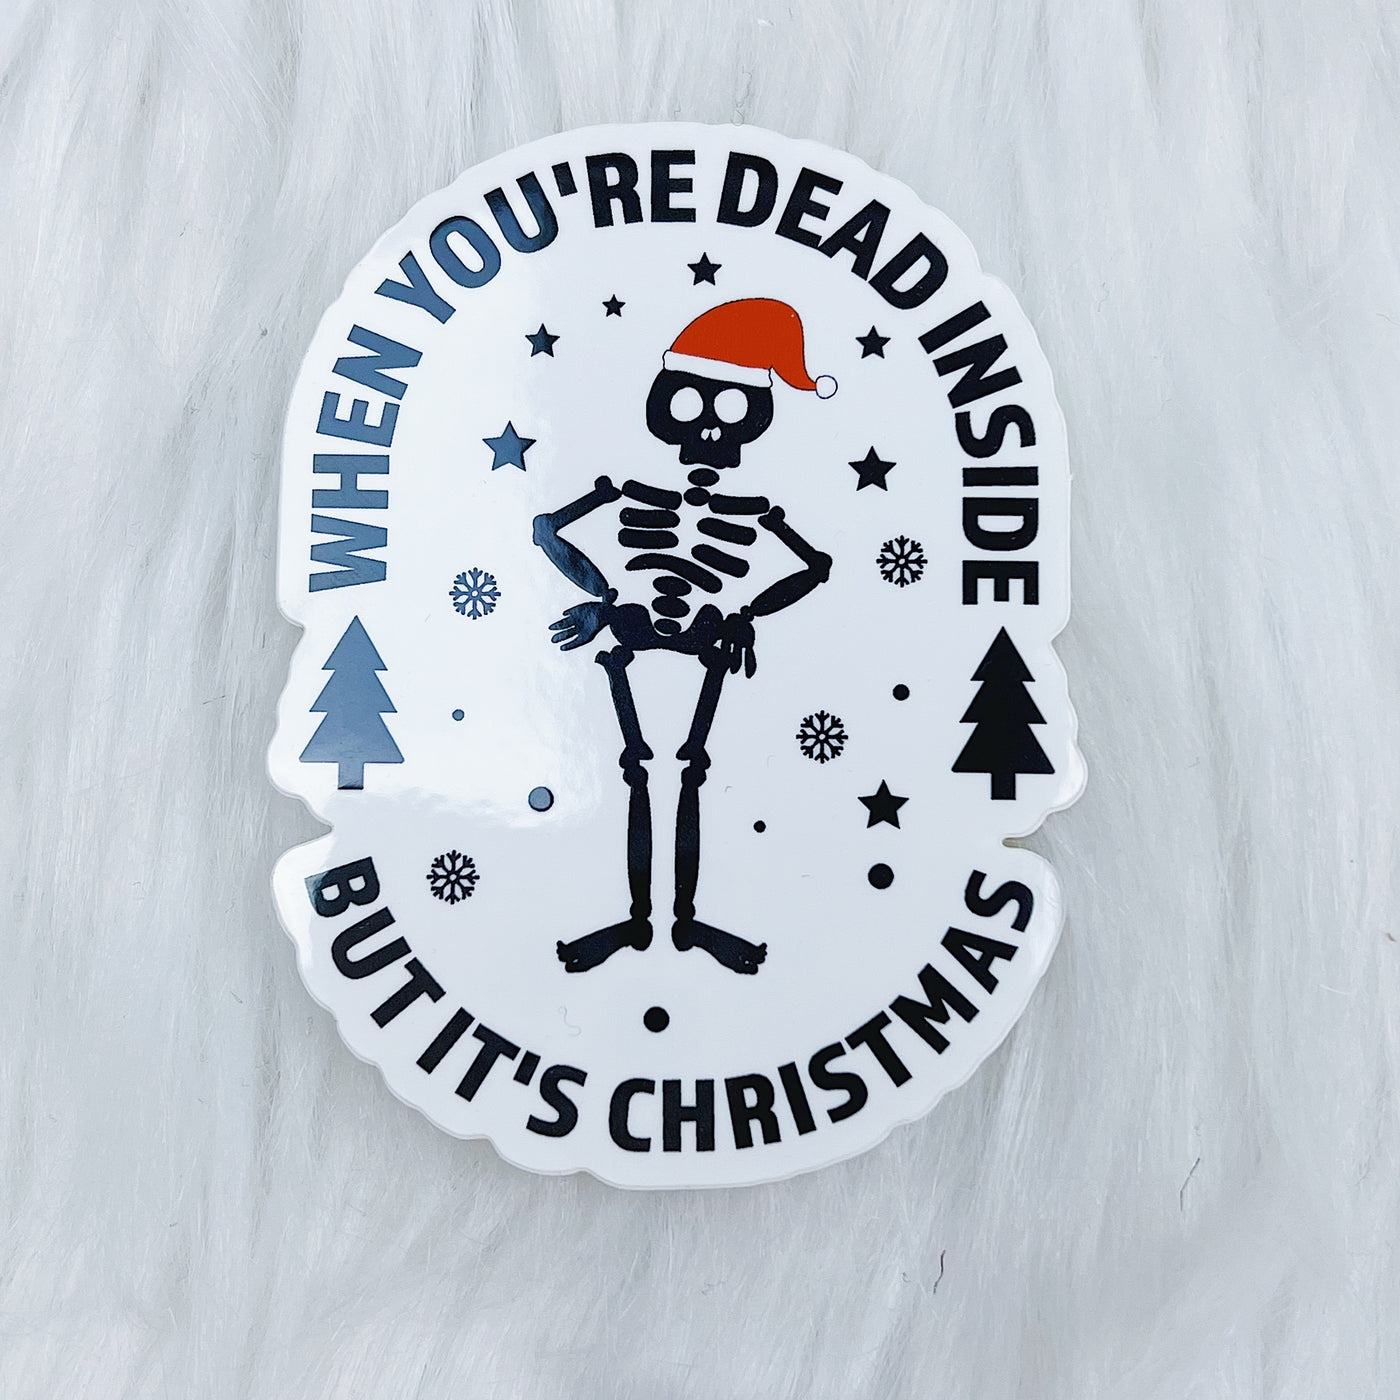 When You're Dead Inside But It's Christmas Vinyl Sticker Die Cut